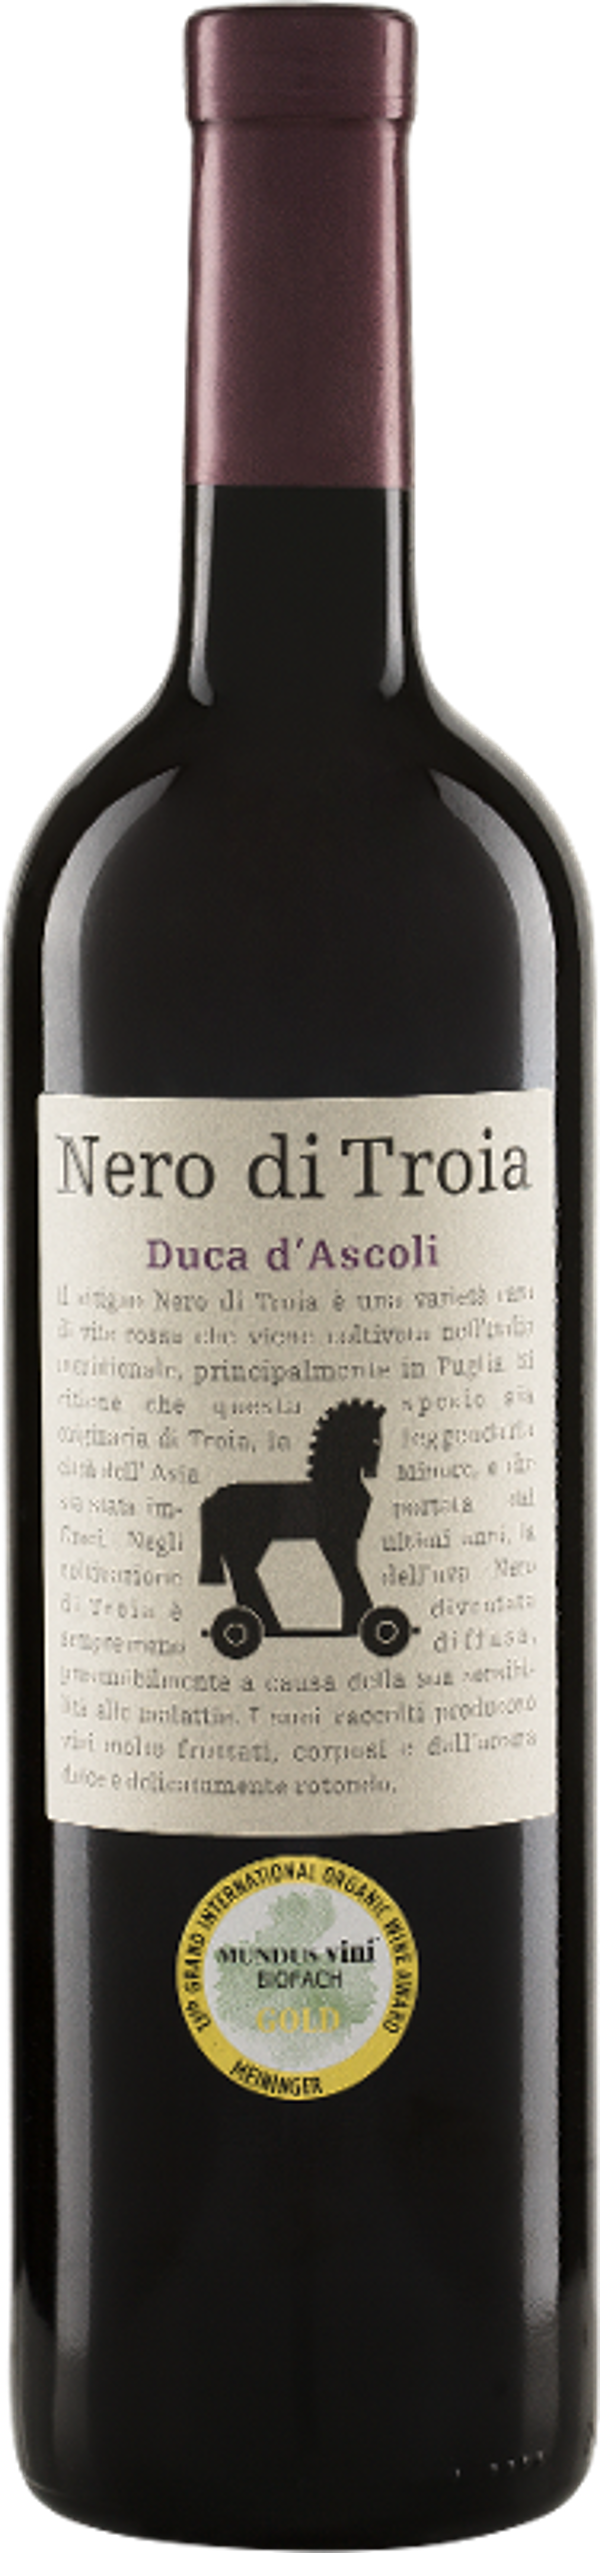 Produktfoto zu Nero di Troia Duca d'Ascoli Puglia IGT 2021